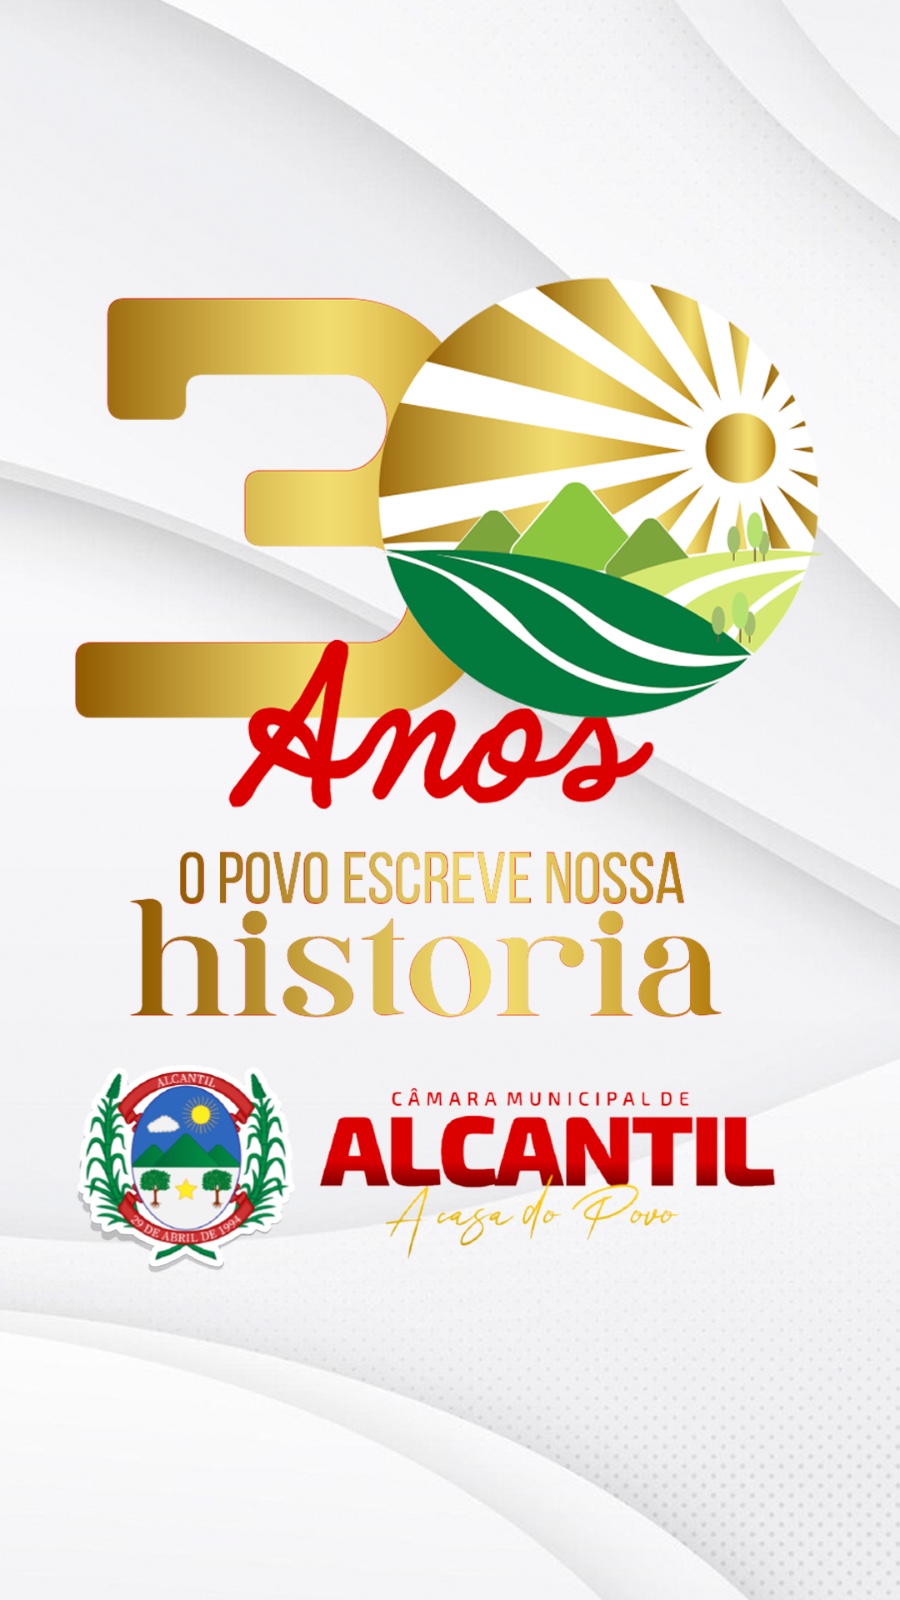 ALCANTIL 30 ANOS DE HISTÓRIA